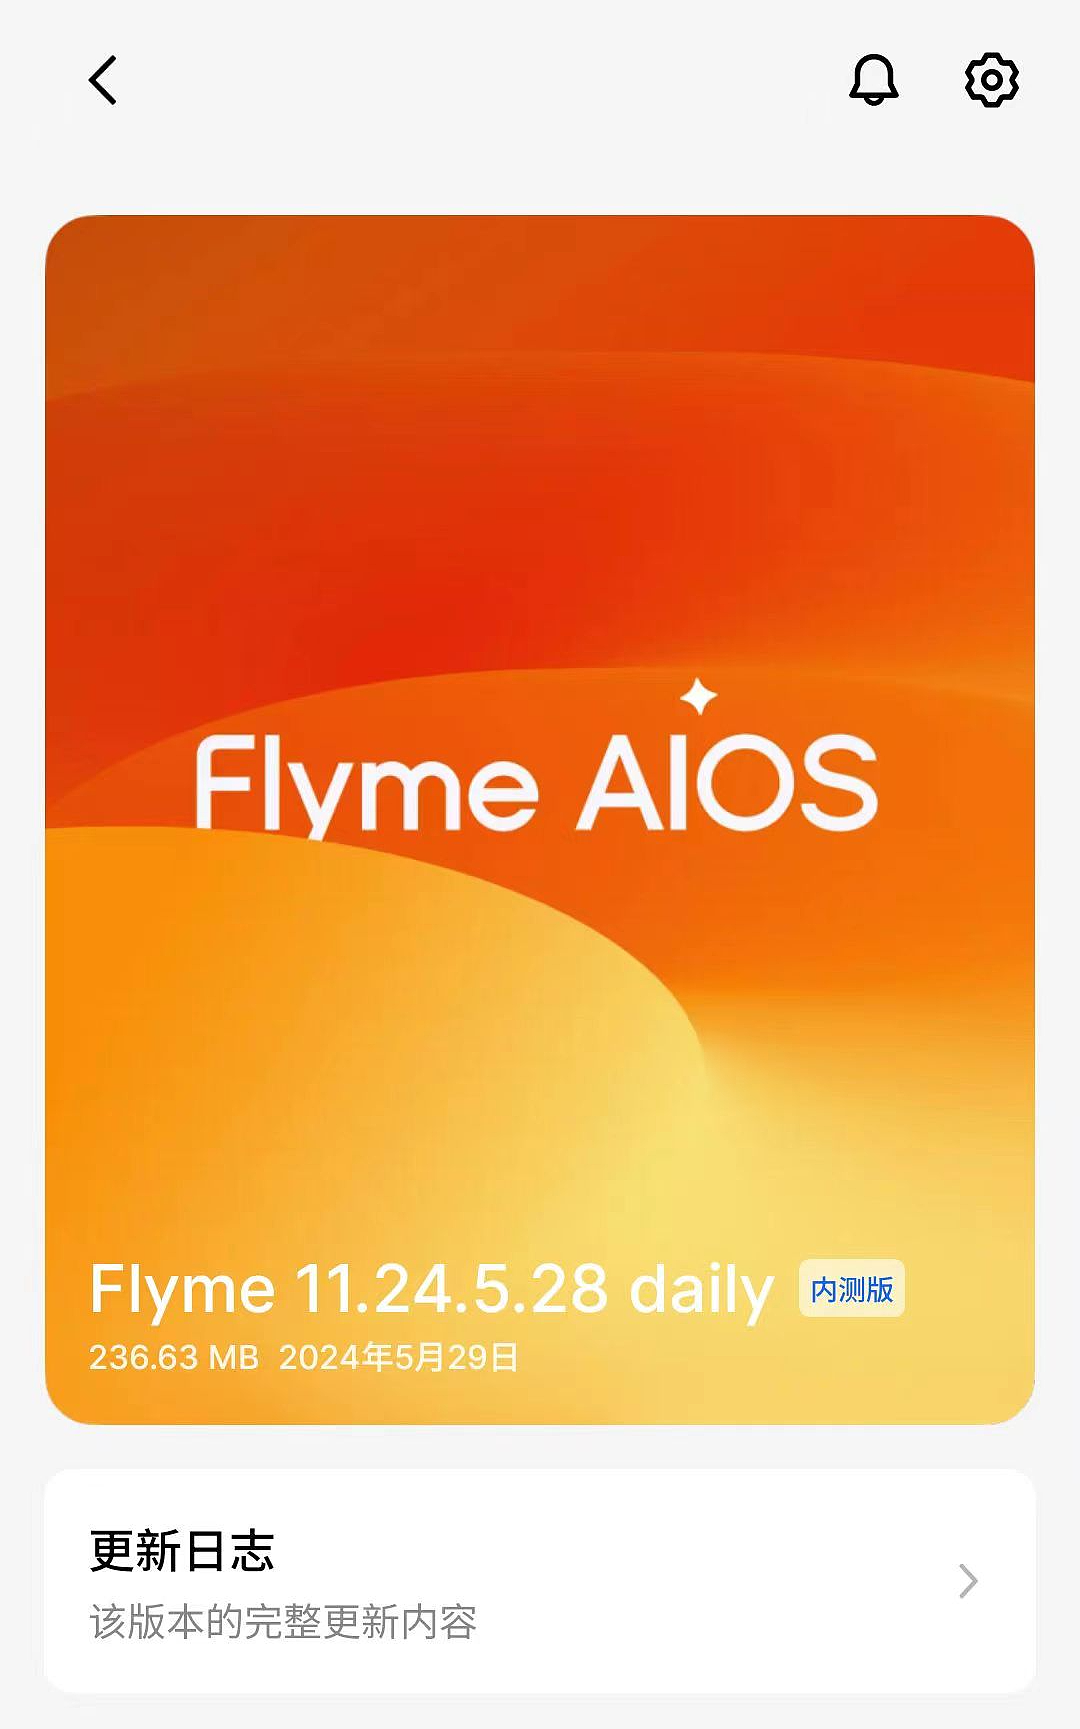 魅族 21 系列手机推送 Flyme AIOS 11.24.5.28 daily：实况通知、即圈即搜 - 1